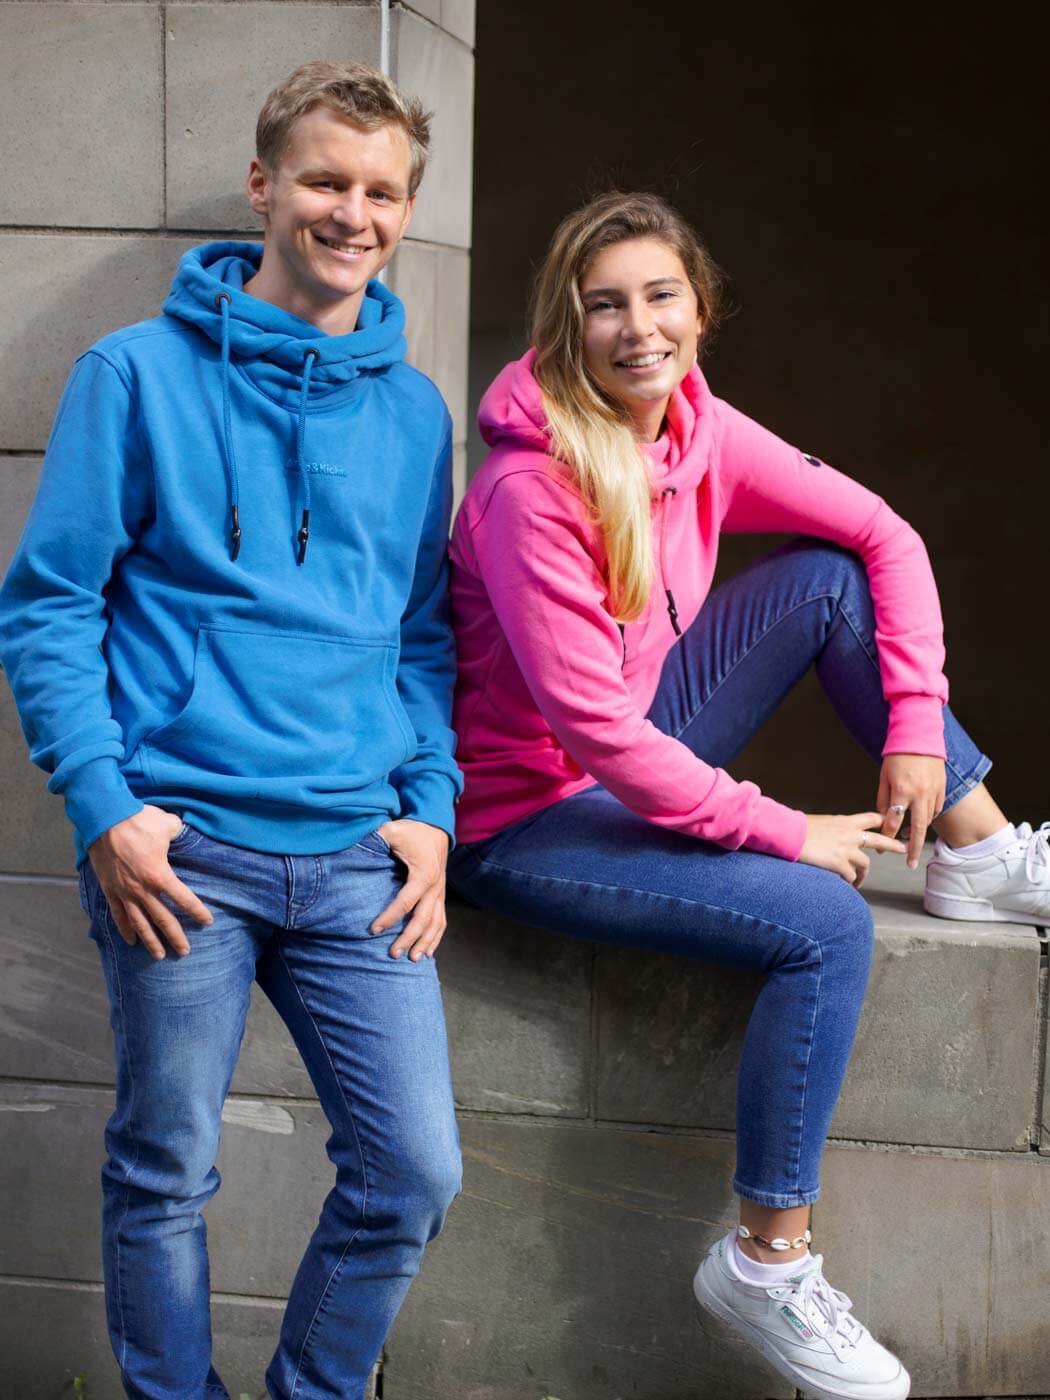 Frau im pinken Hoodie sitzt auf einer niedrigen Mauer, junger Mann im blauen Hoodie steht neben ihr.